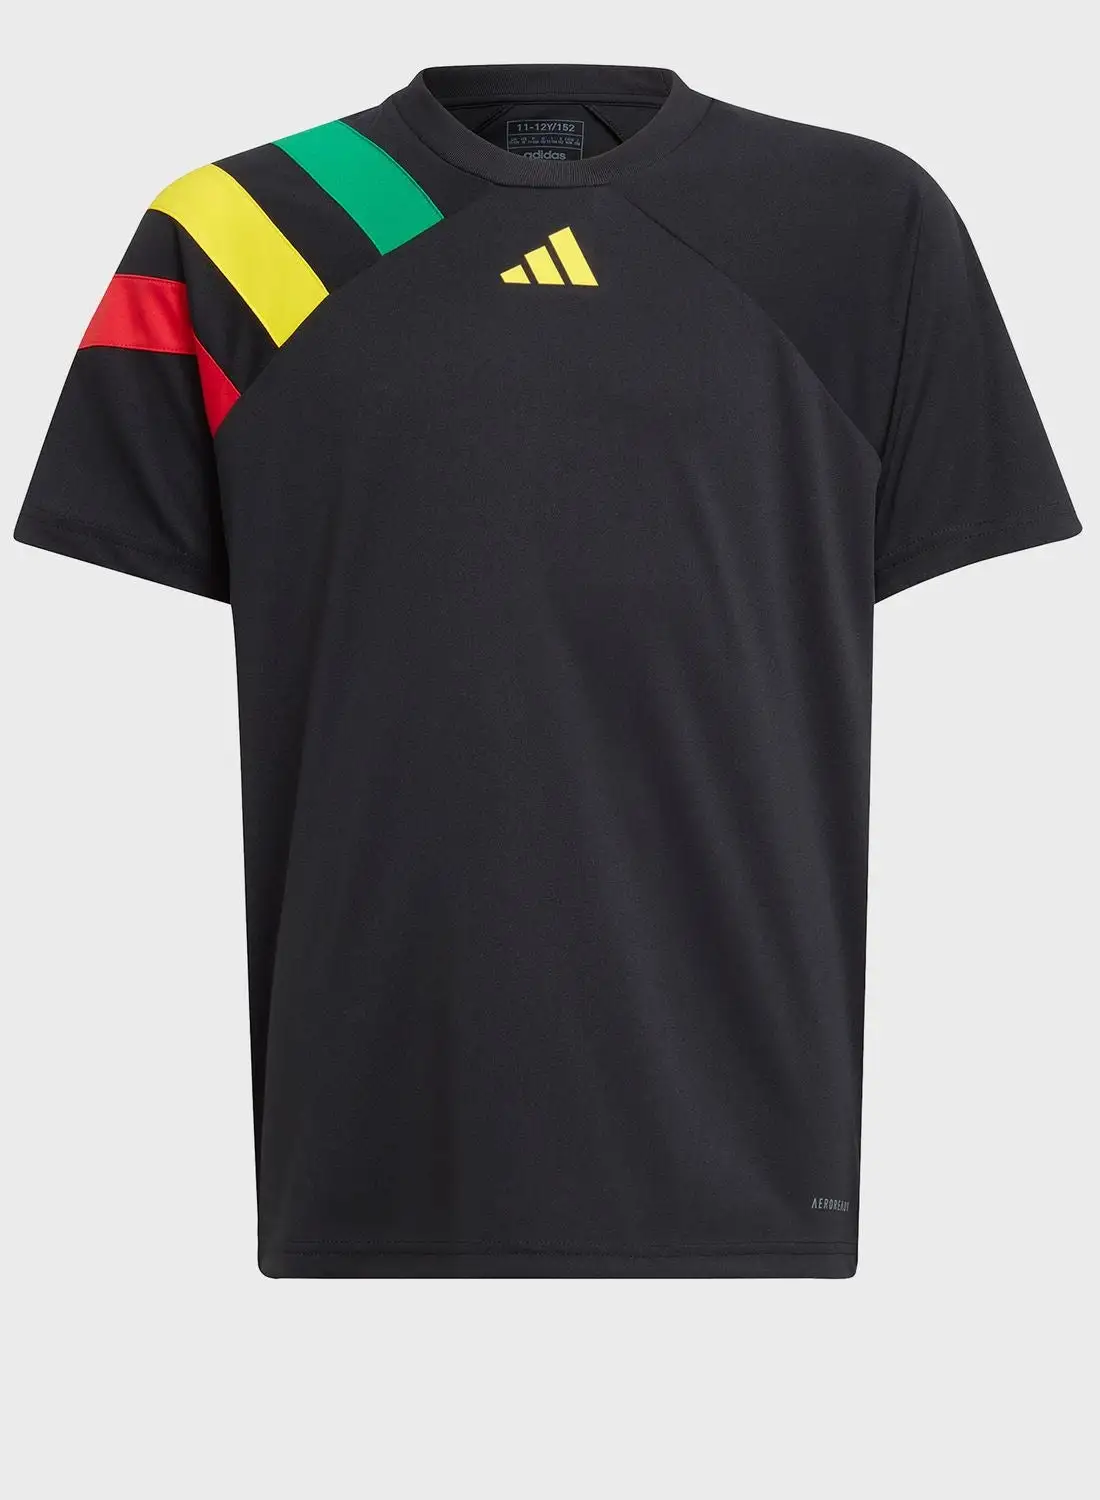 Adidas Kids Fortore23 Jersey T-shirt